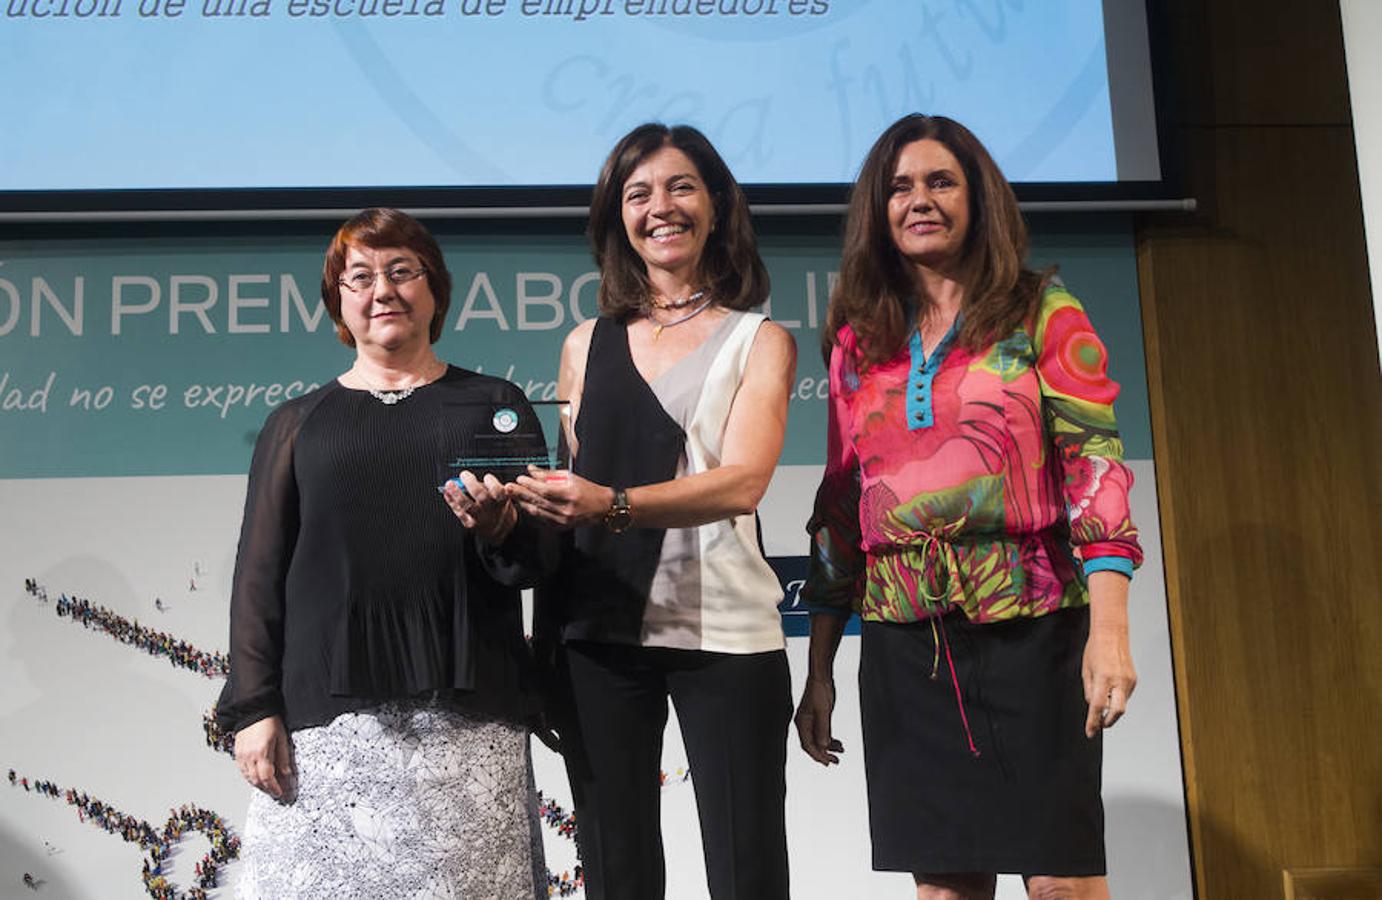 Las mejores imágenes de la gala de entrega de los Premios ABC Solidario. El Centro de Cooperación y Acción Solidaria de la Universidad de Burgos, Premio ABCsolidario en la Modalidad Voluntariado Universitario